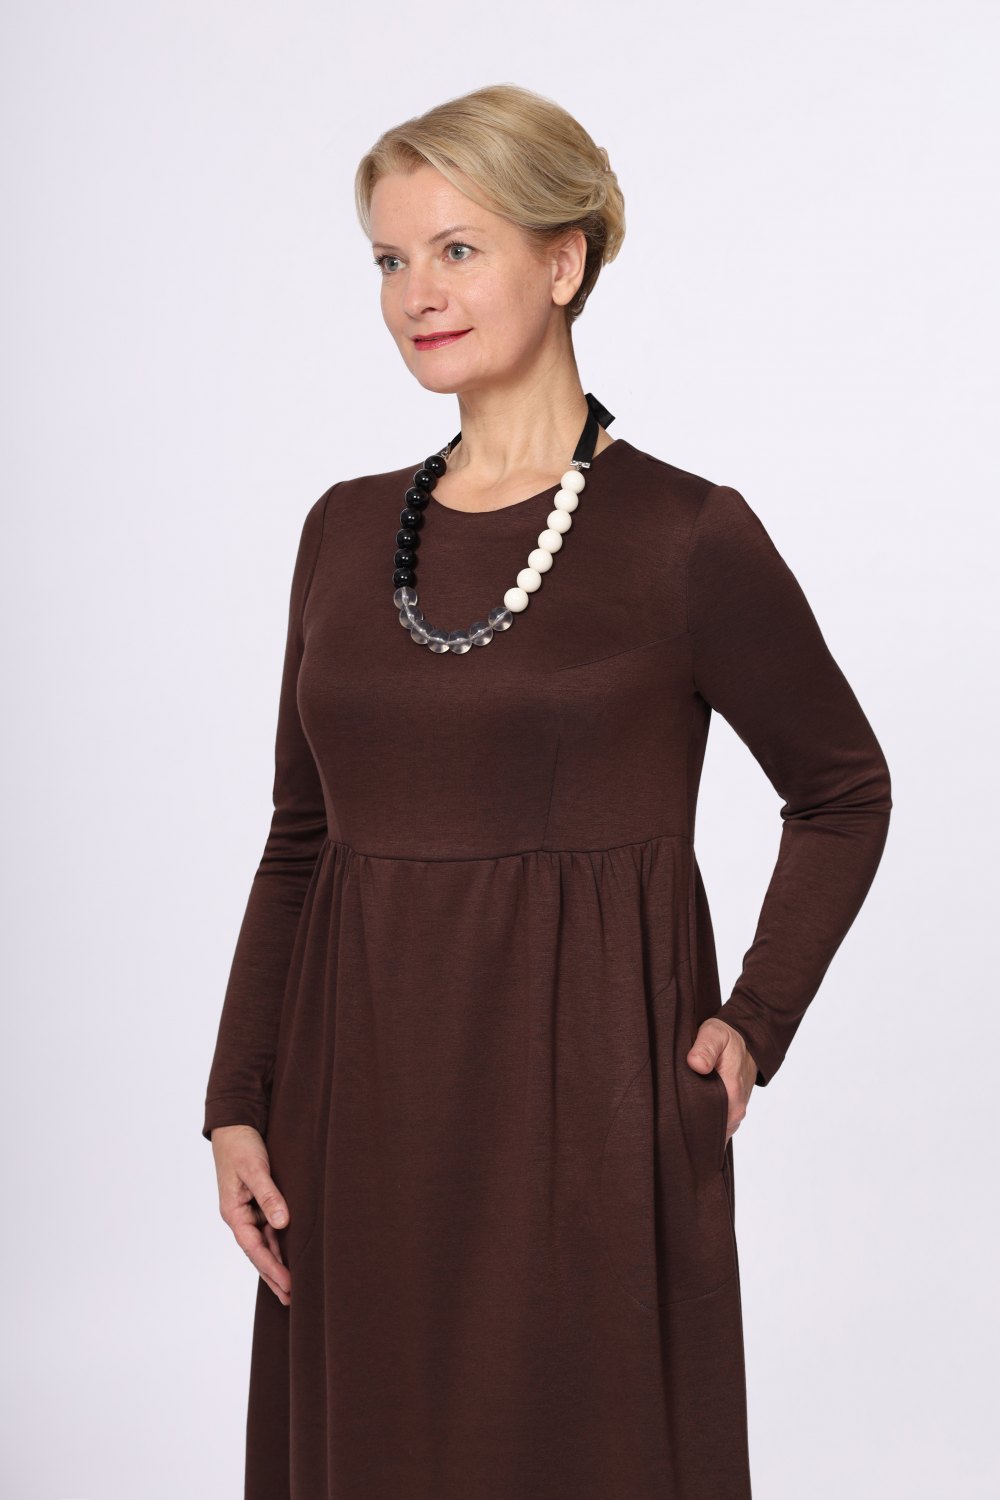 Платье женское "Эдельвейс" модель 628ц цвет: шоколад